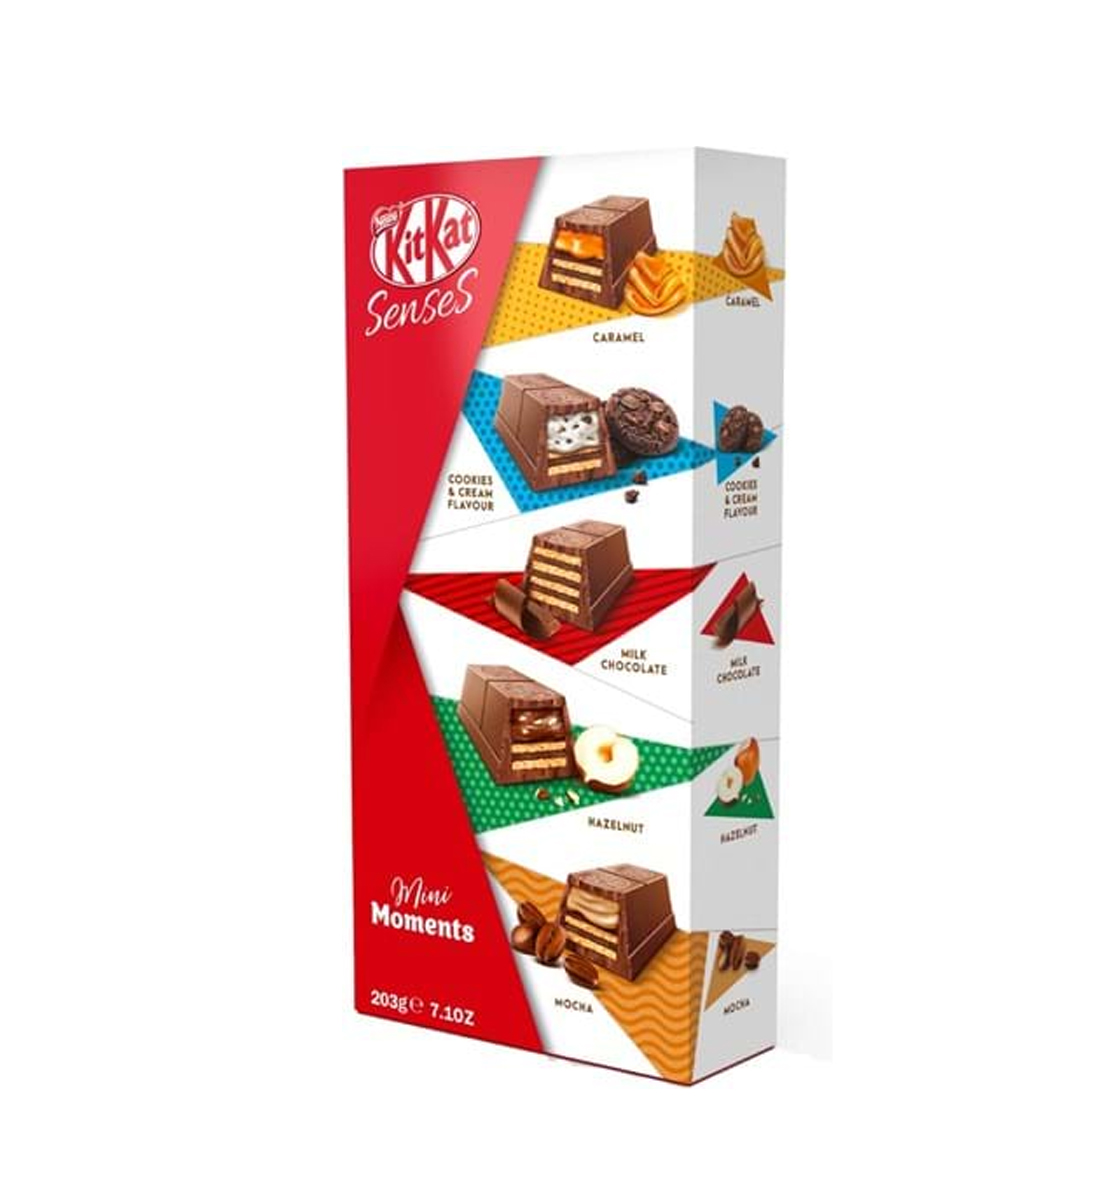 Kit Kat Mini Moments Box 203g